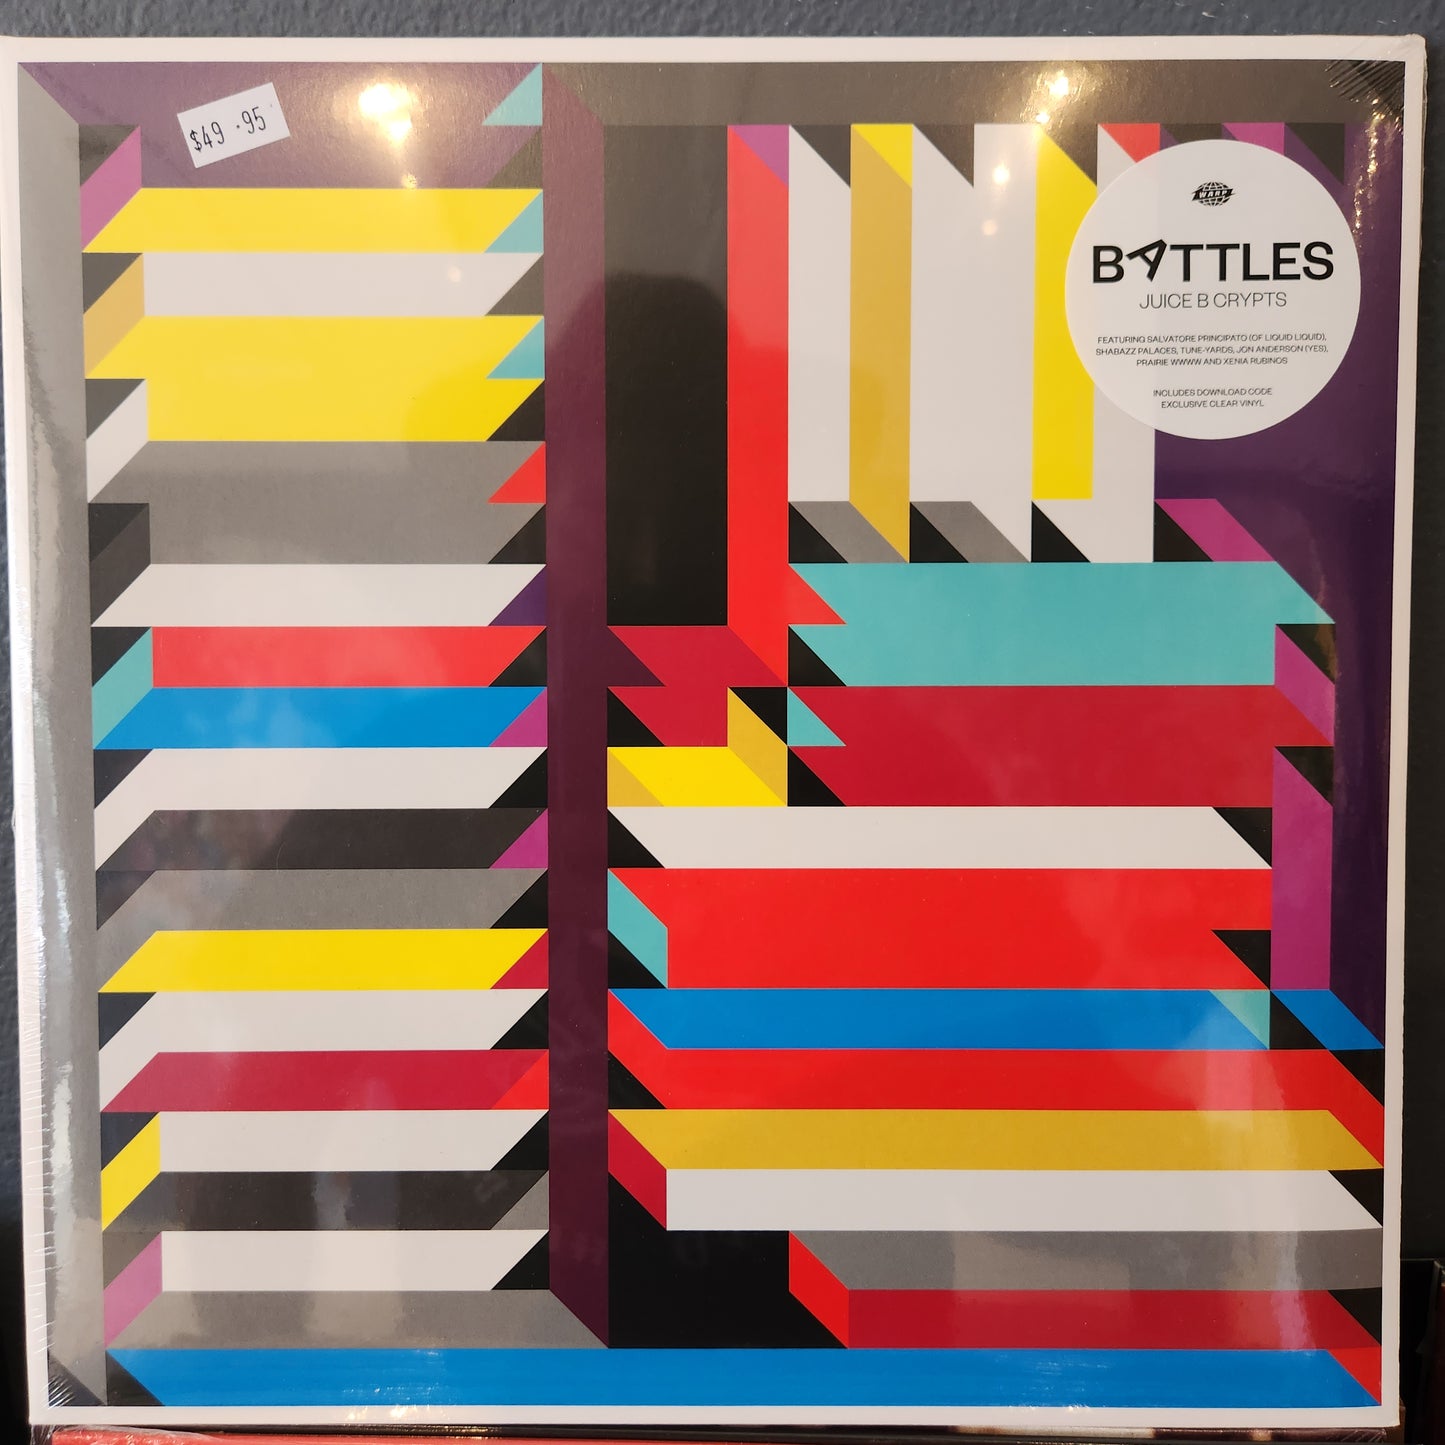 Battles - Juice B Crypts - Vinyl LP